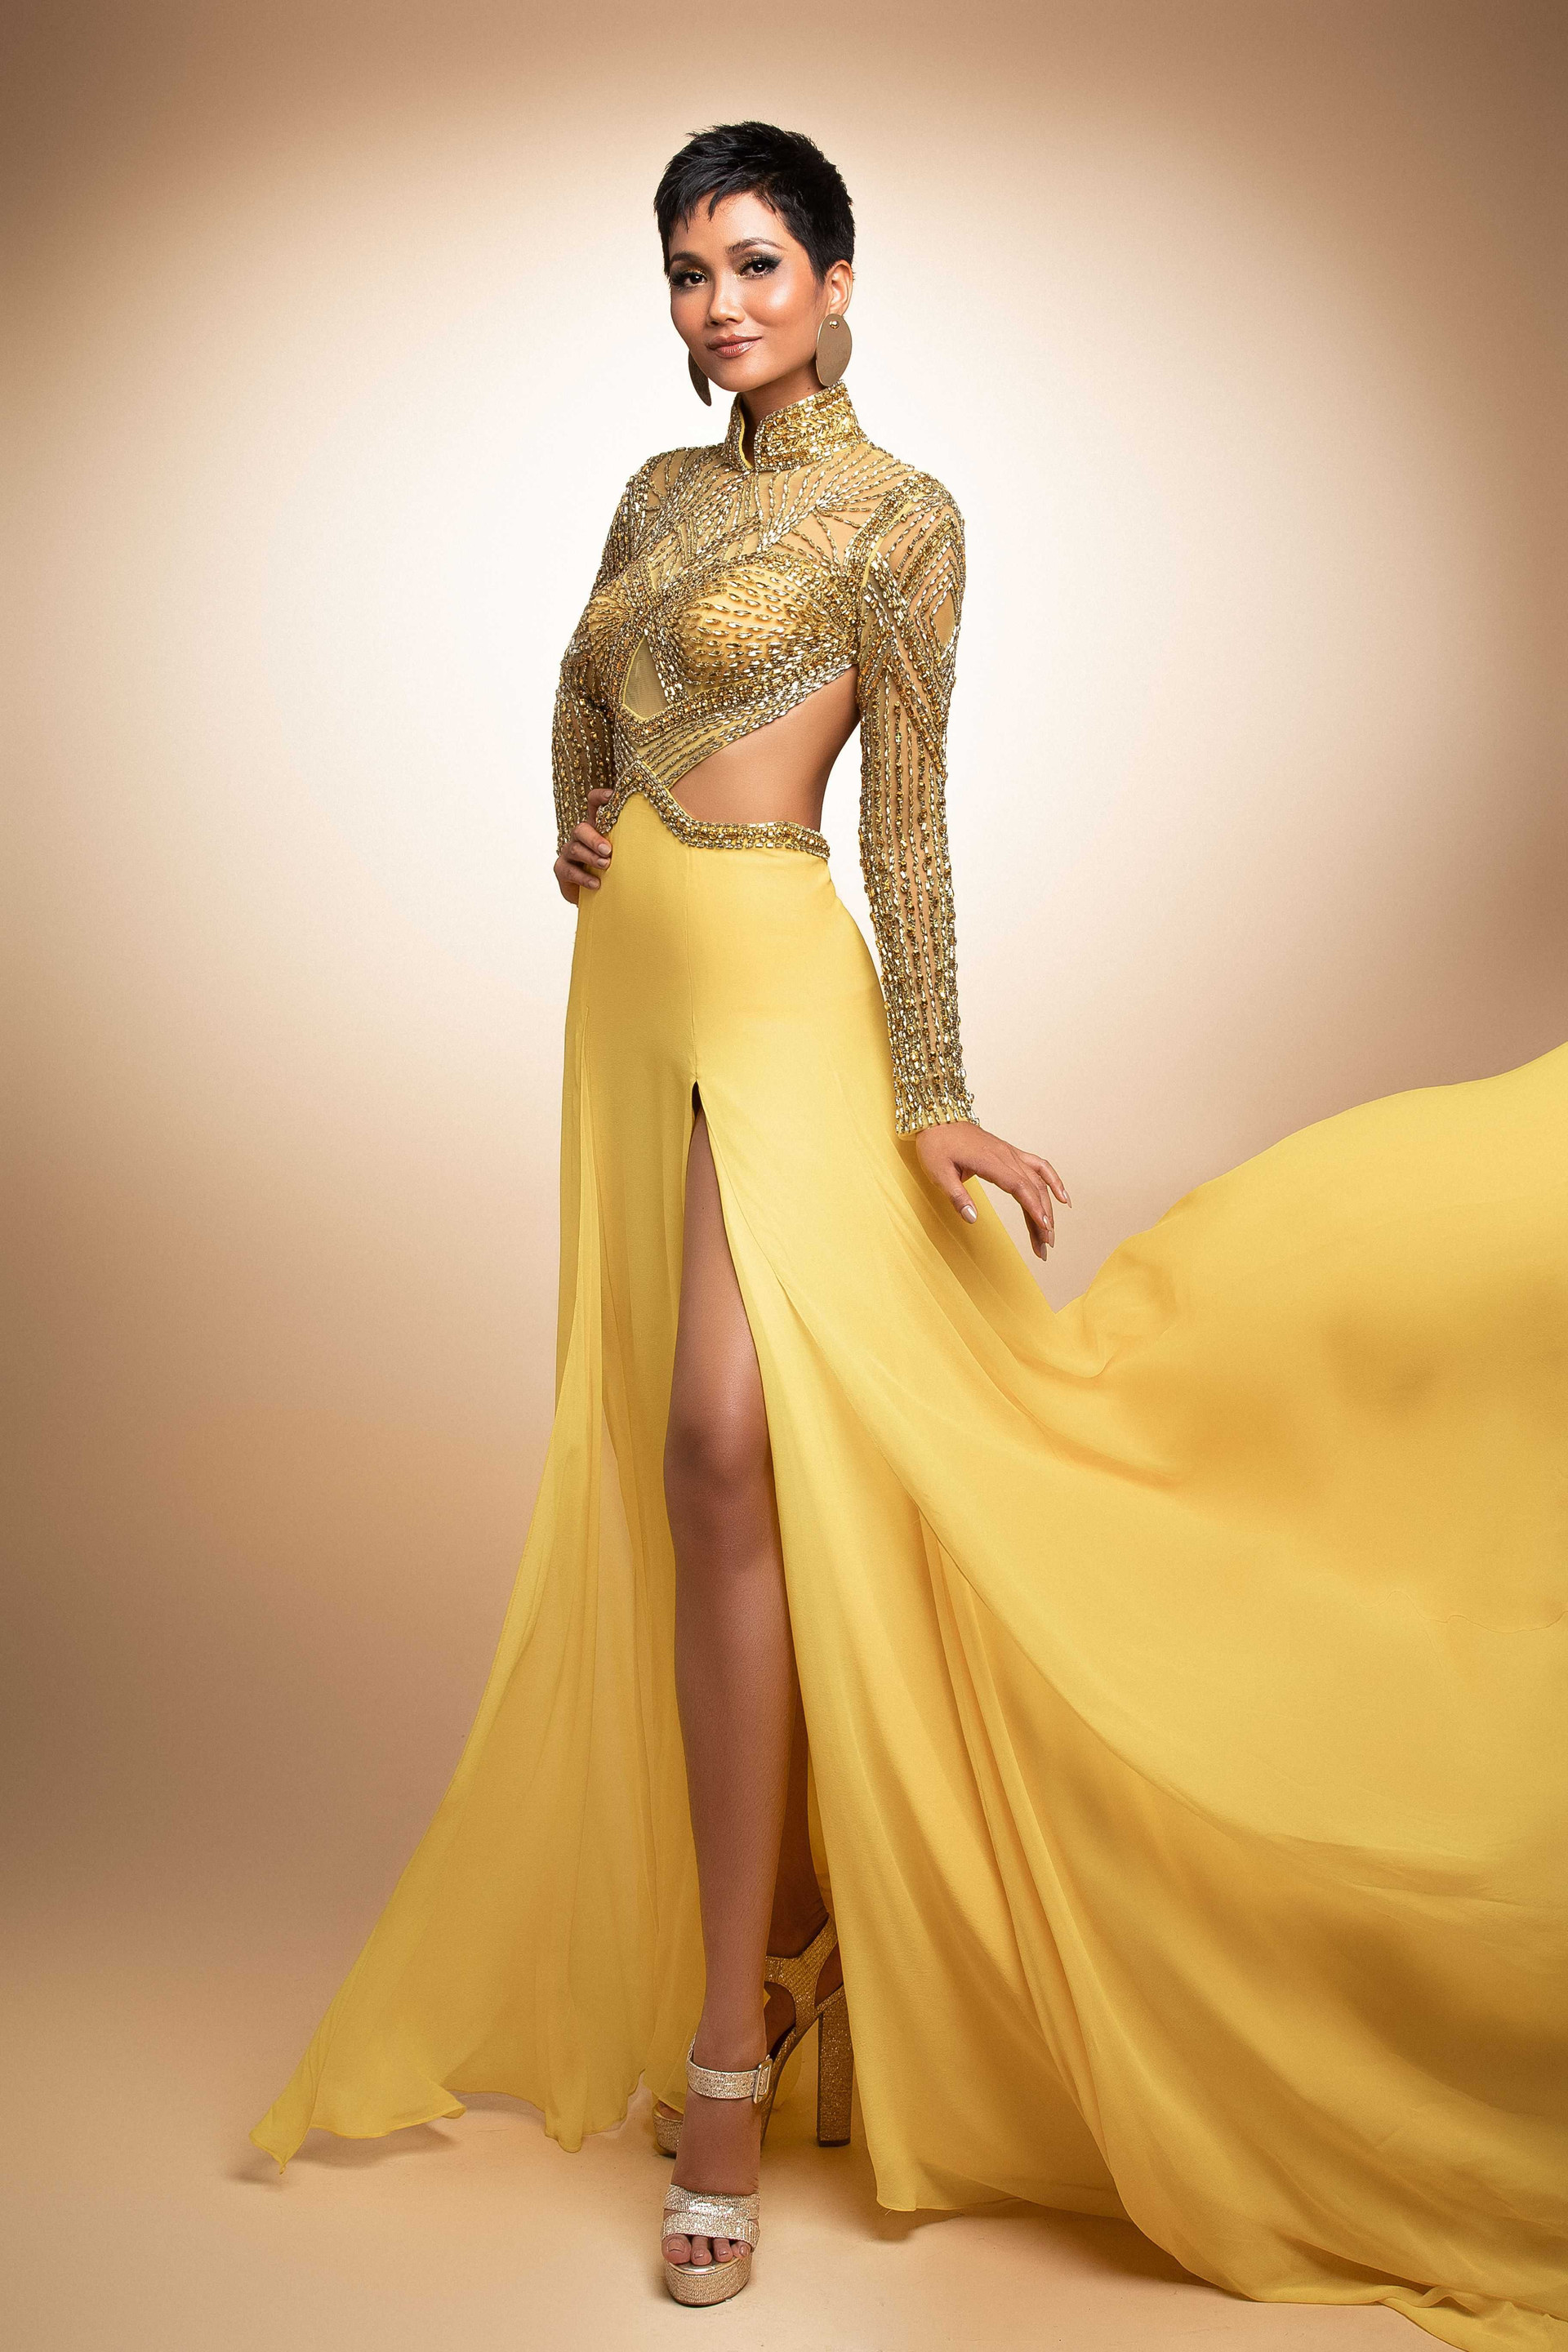 H'Hen Niê quyến rũ với váy dạ hội xẻ cao bất tận trước thềm bán kết Miss Universe 2018